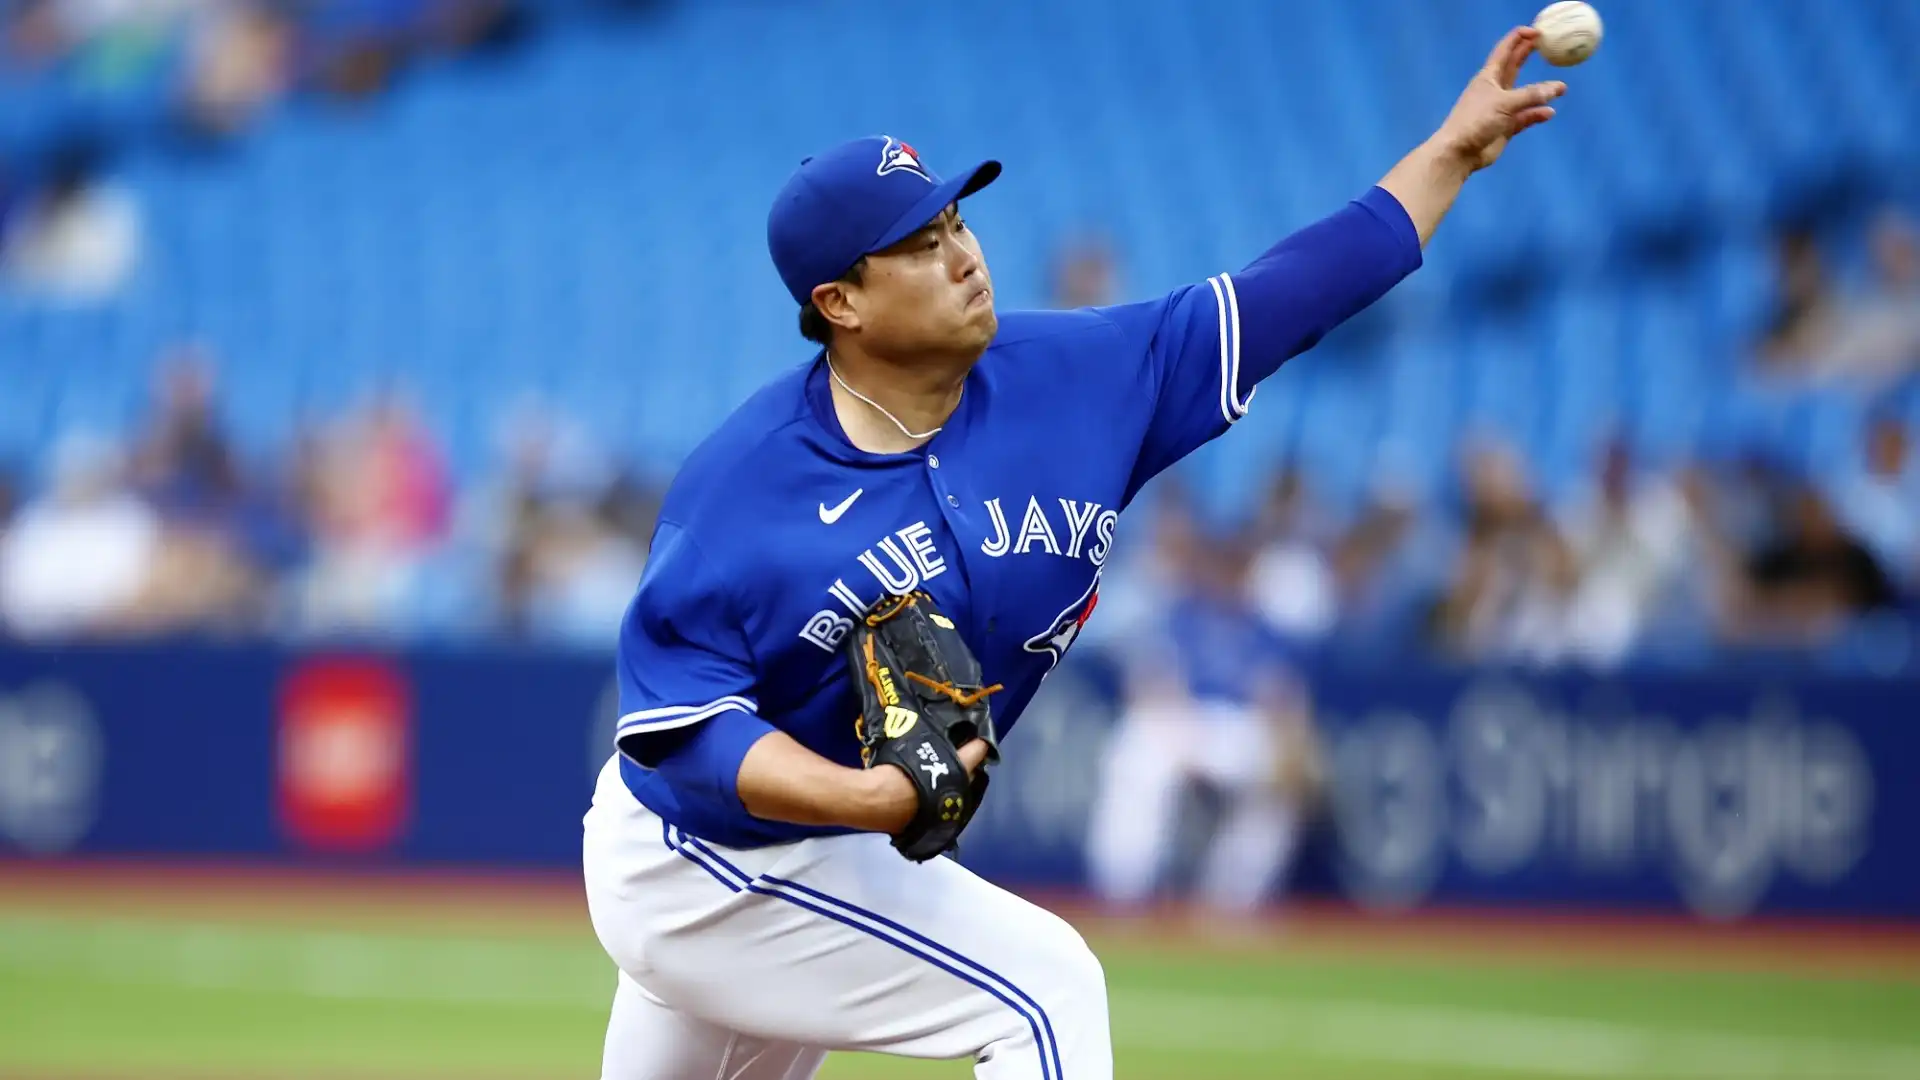 Ryu Hyun-jin (Baseball): patrimonio netto stimato 75 milioni di dollari. All-Star MLB nel 2019